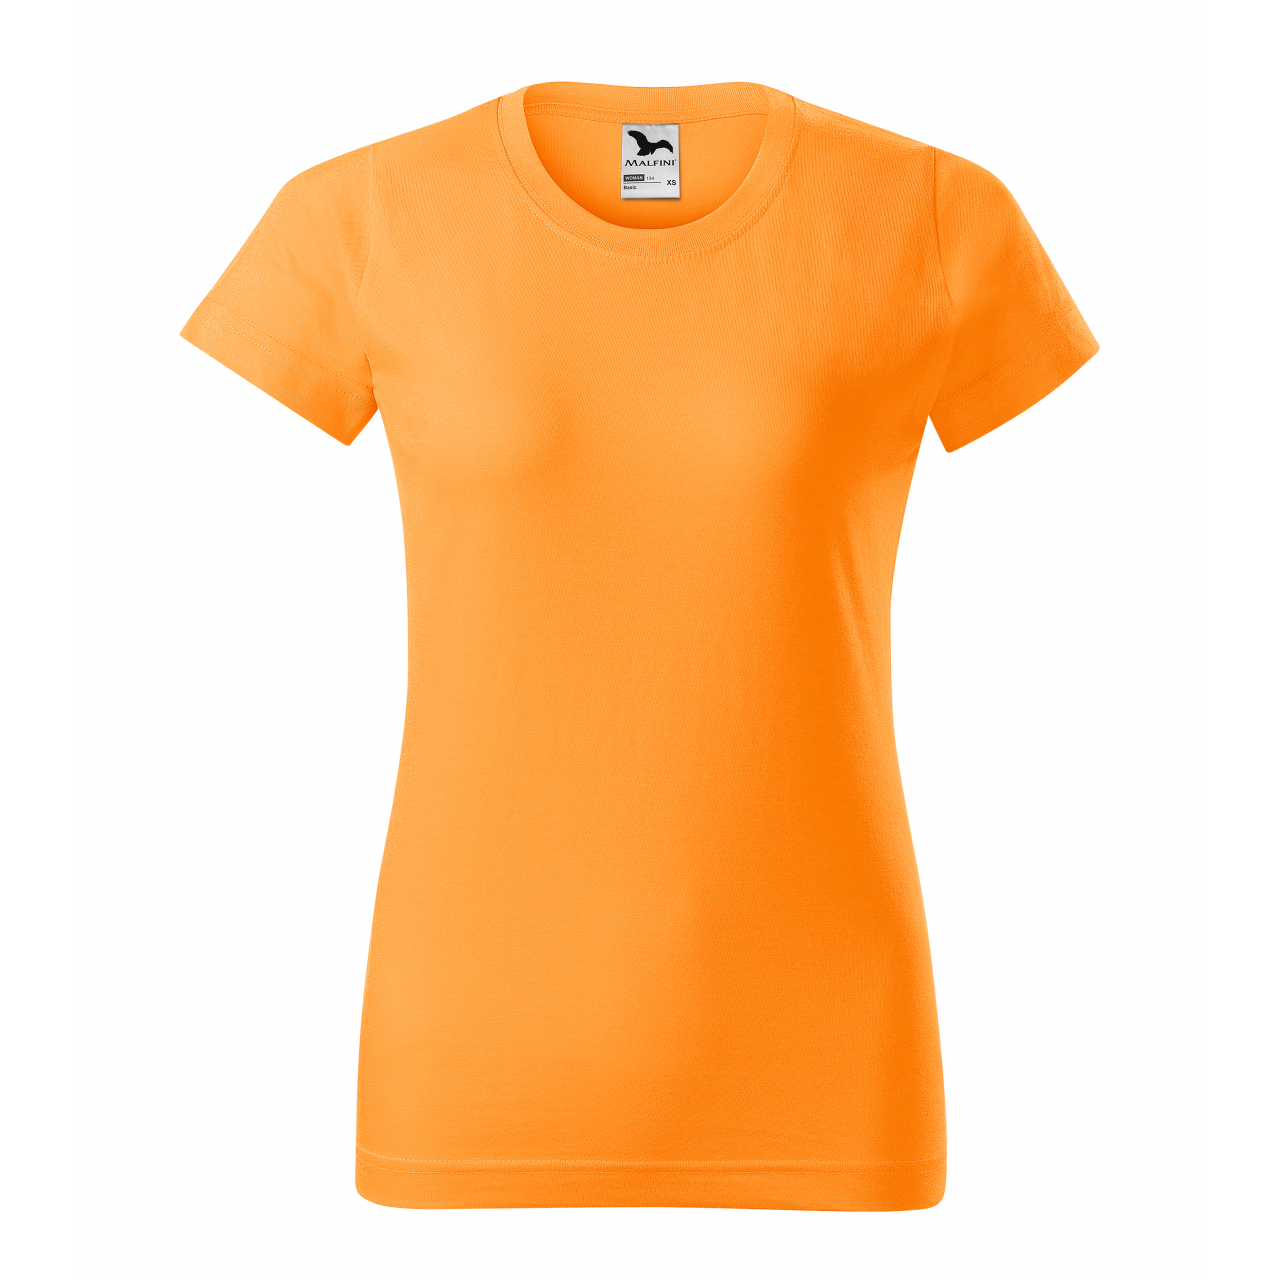 Triko dámské Malfini Basic - světle oranžové, XL